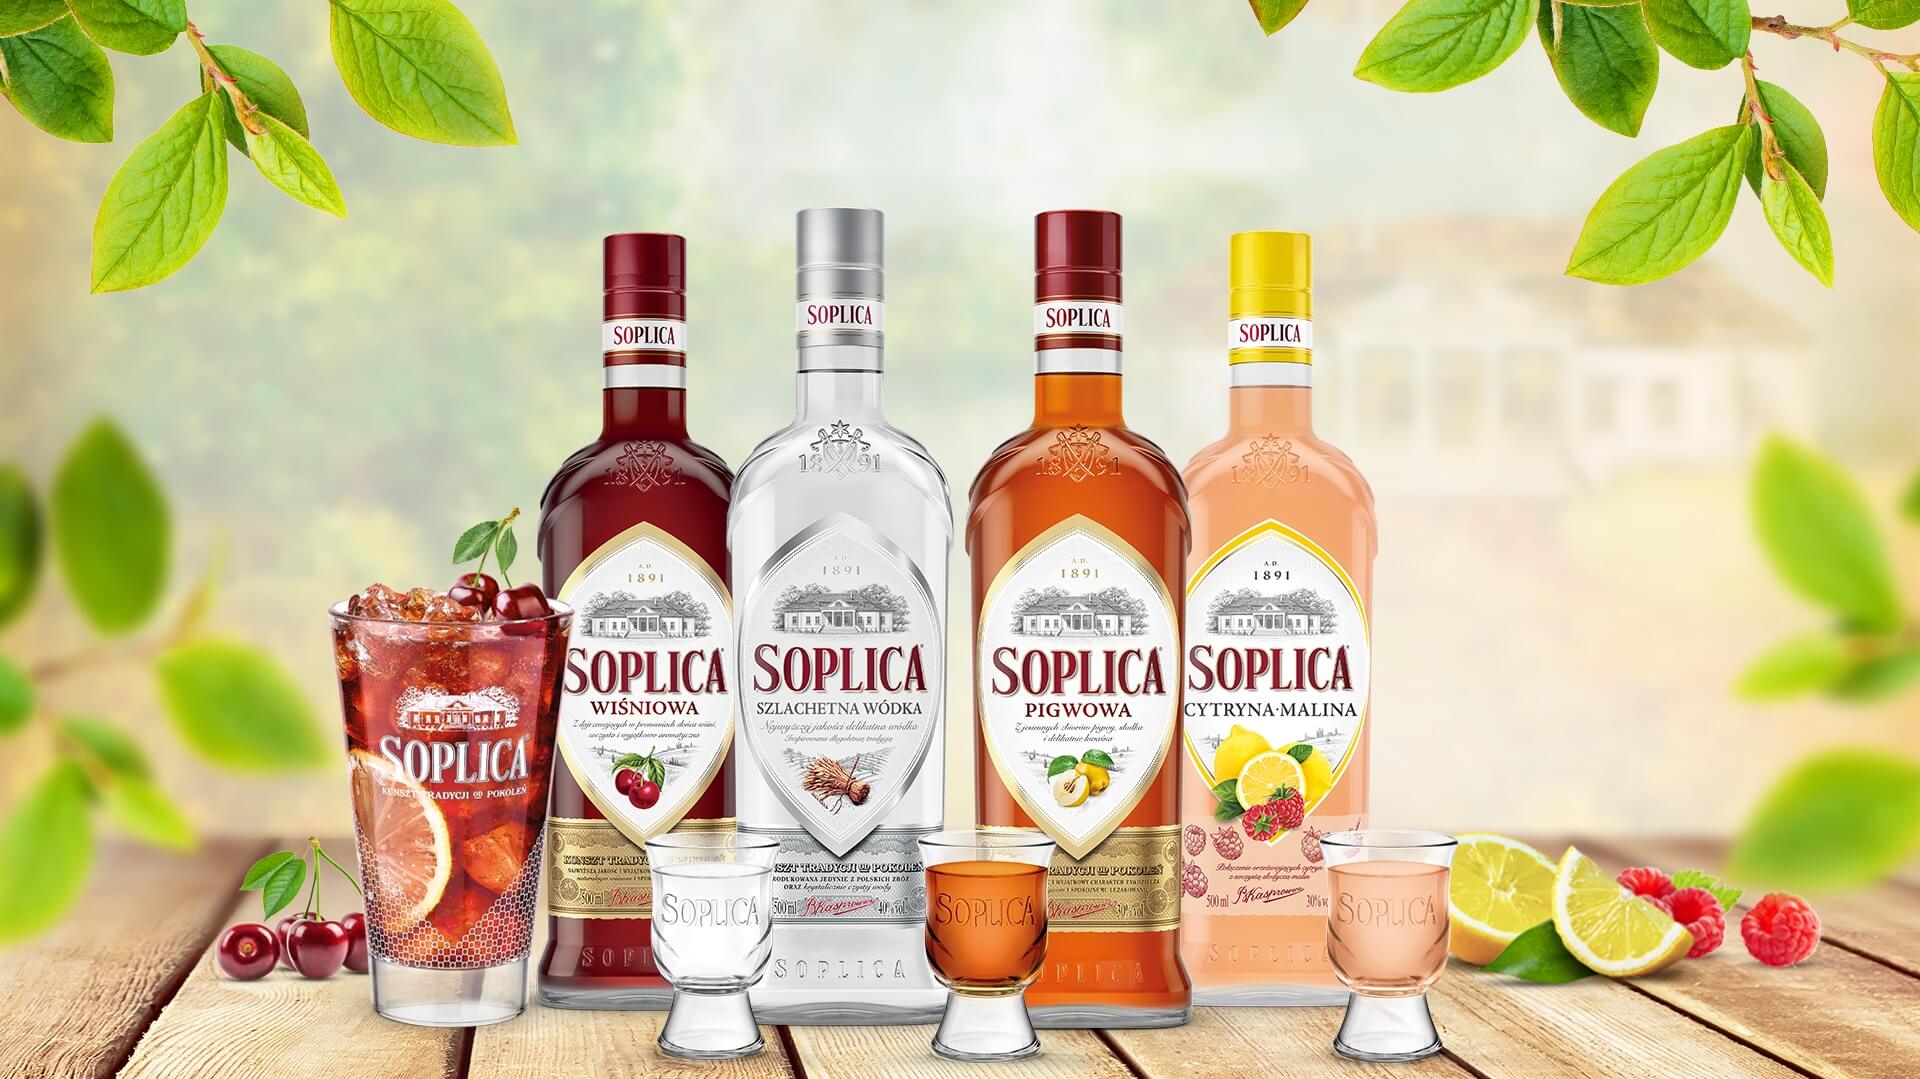 how-to-drink-soplica-wisniowa